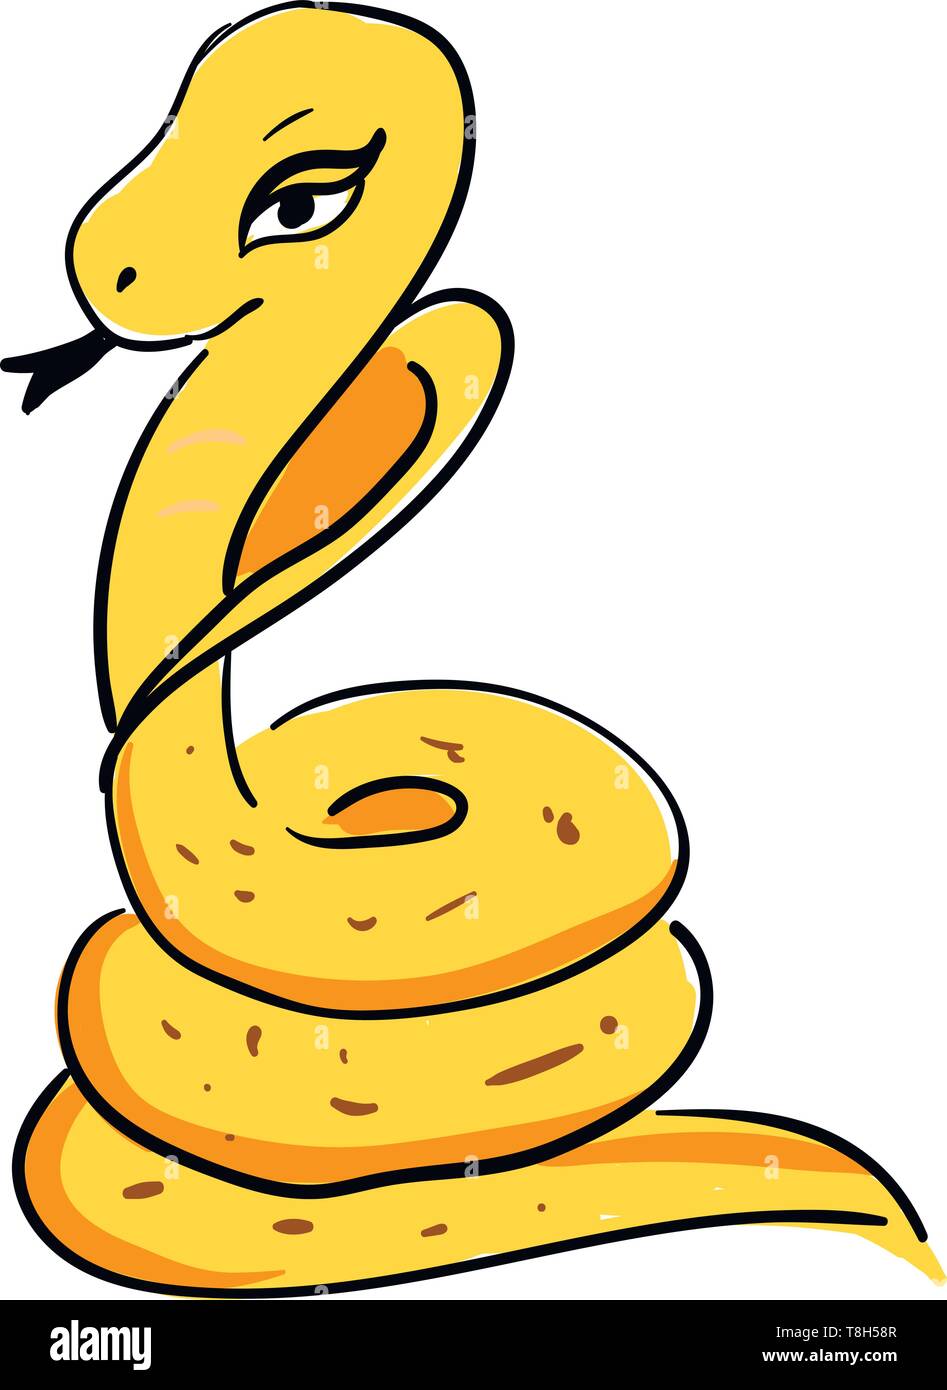 Un long serpent de couleur jaune avec de très beaux yeux , Scénario, dessin en couleur ou d'illustration. Illustration de Vecteur